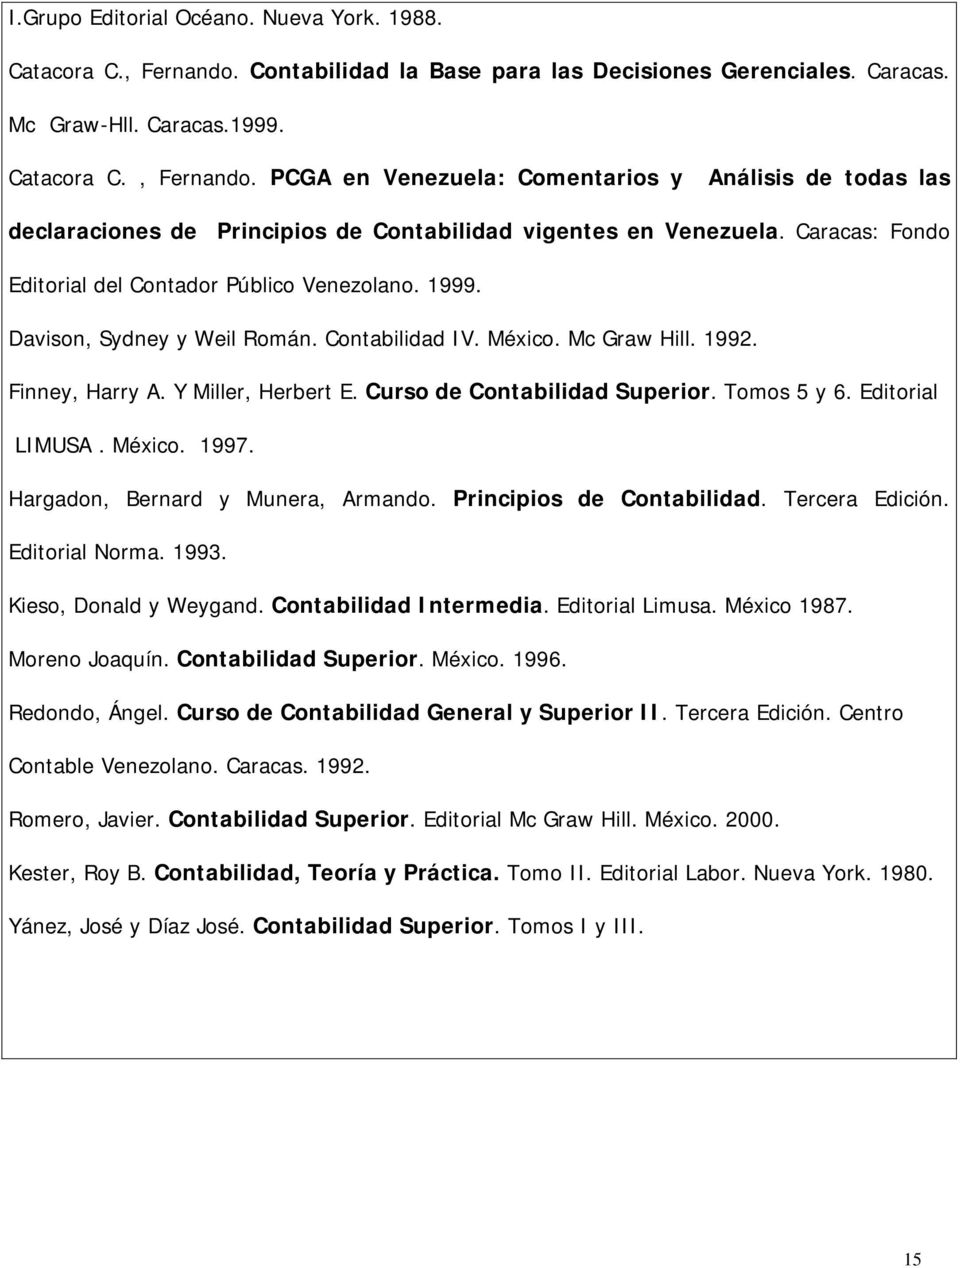 Curso de Contabilidad Superior. Tomos 5 y 6. Editorial LIMUSA. México. 1997. Hargadon, Bernard y Munera, Armando. Principios de Contabilidad. Tercera Edición. Editorial Norma. 1993.